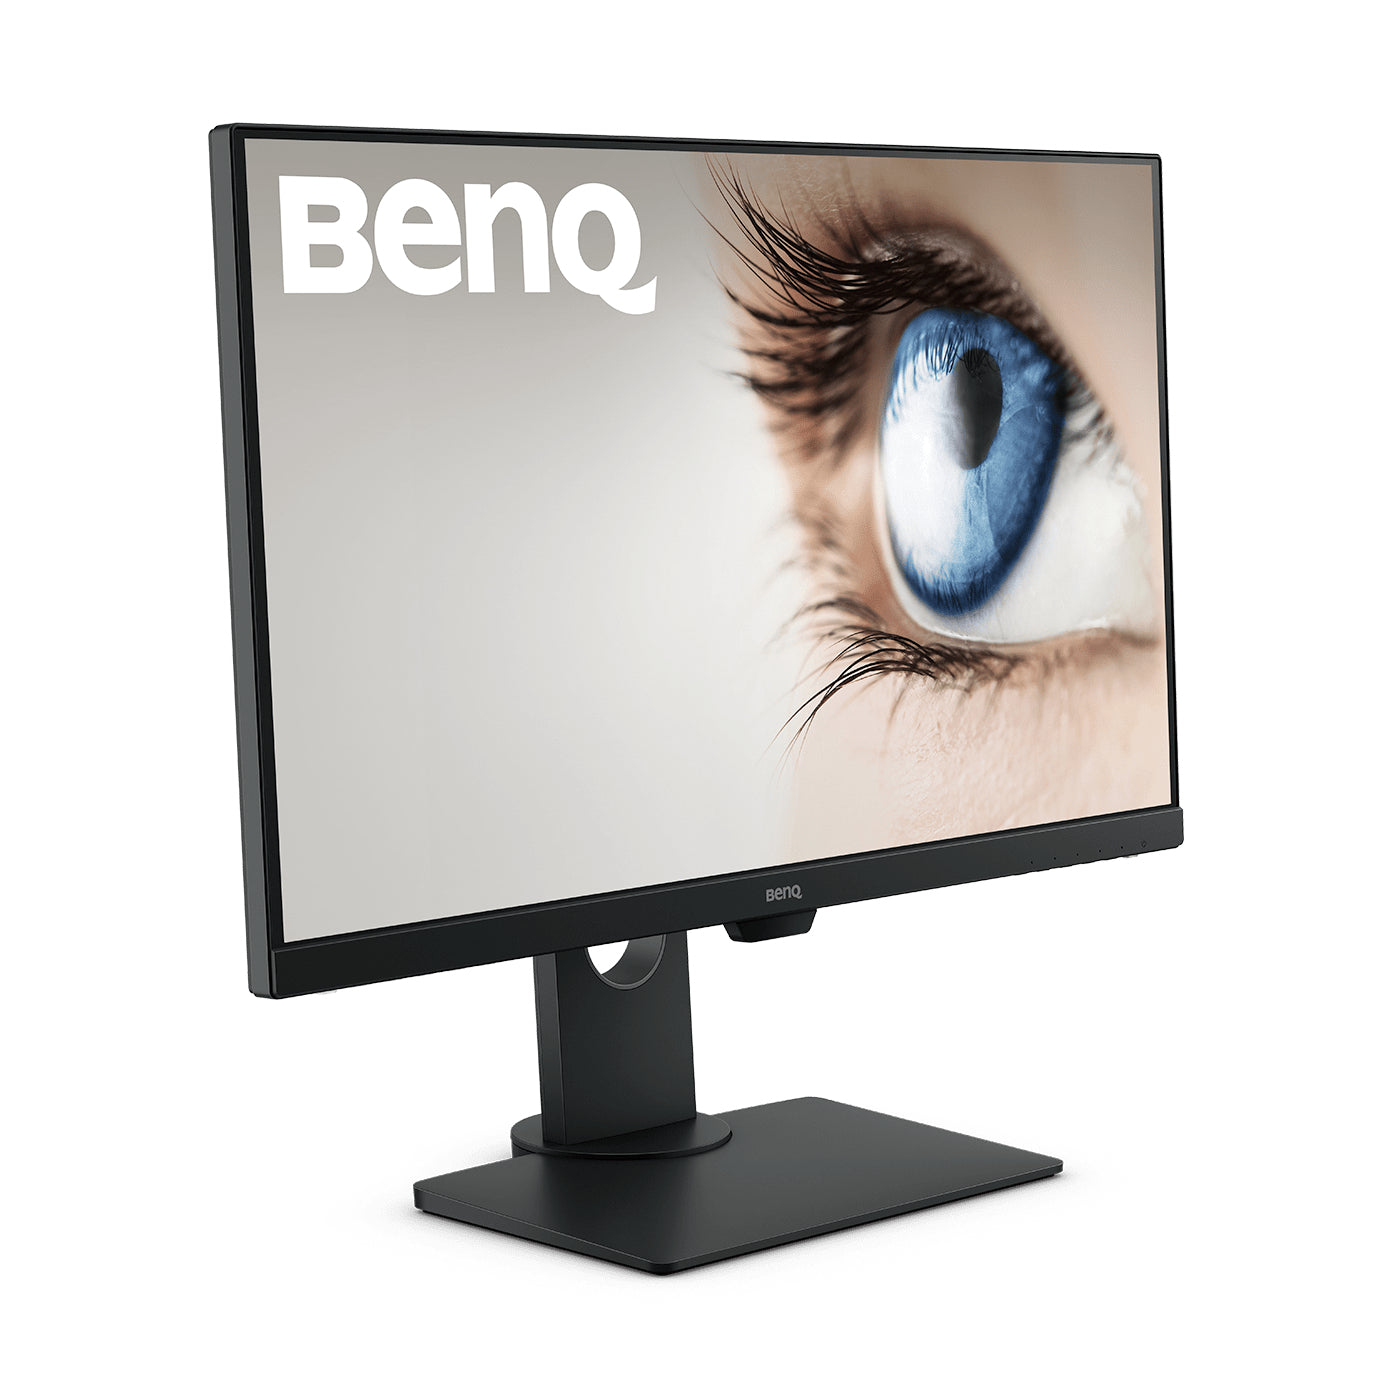 BENQ BL2780T 27inch LED Full-HD